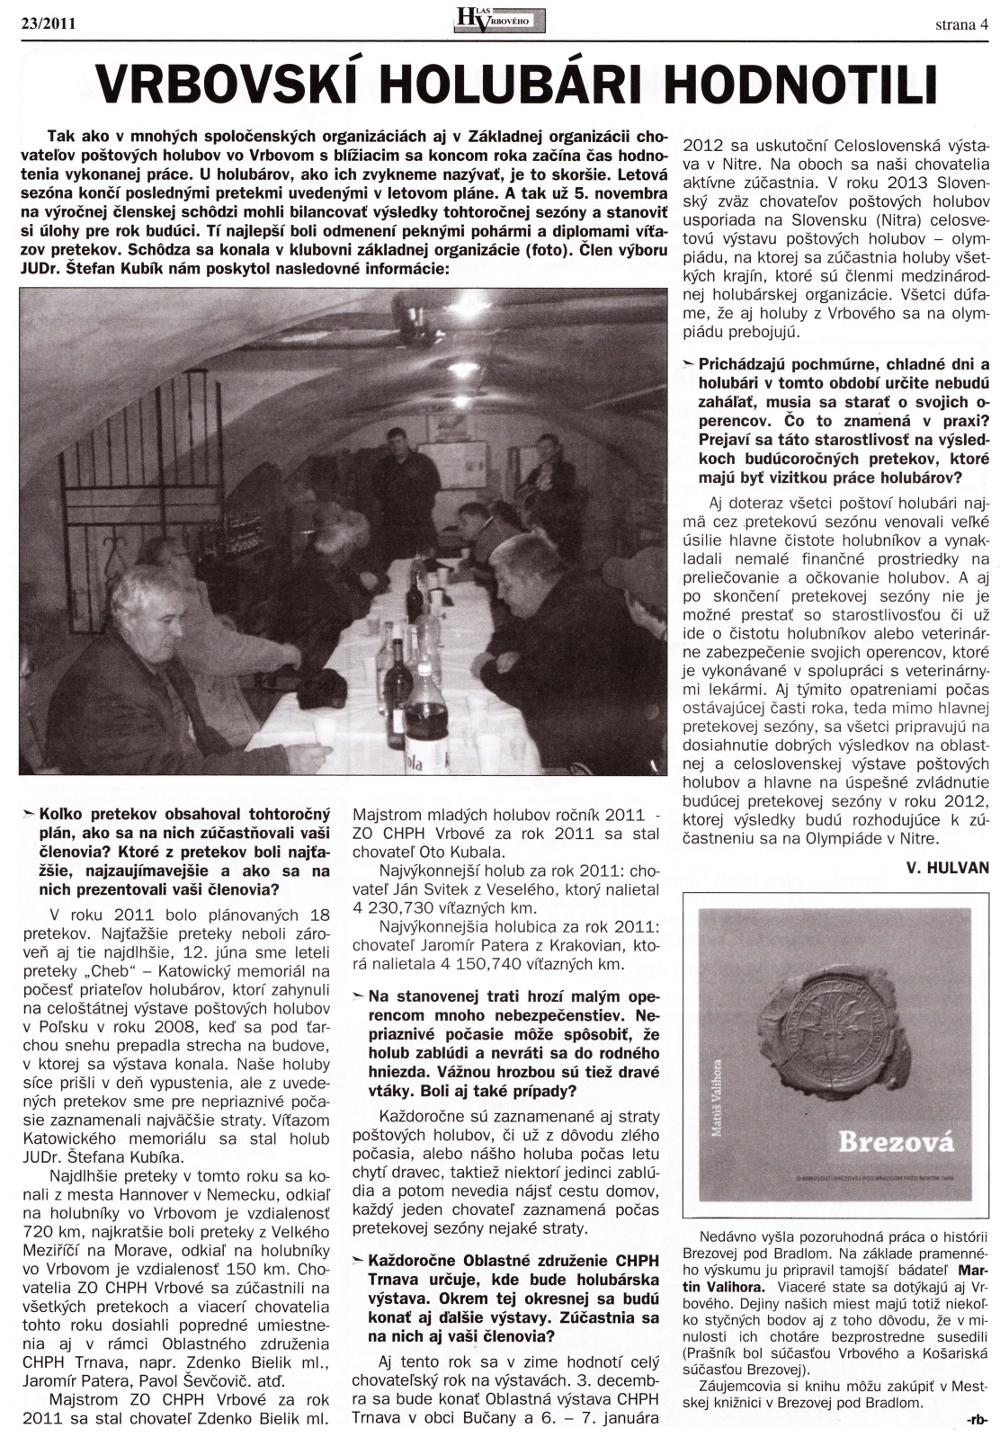 Hlas Vrbového 23/2011, strana 4